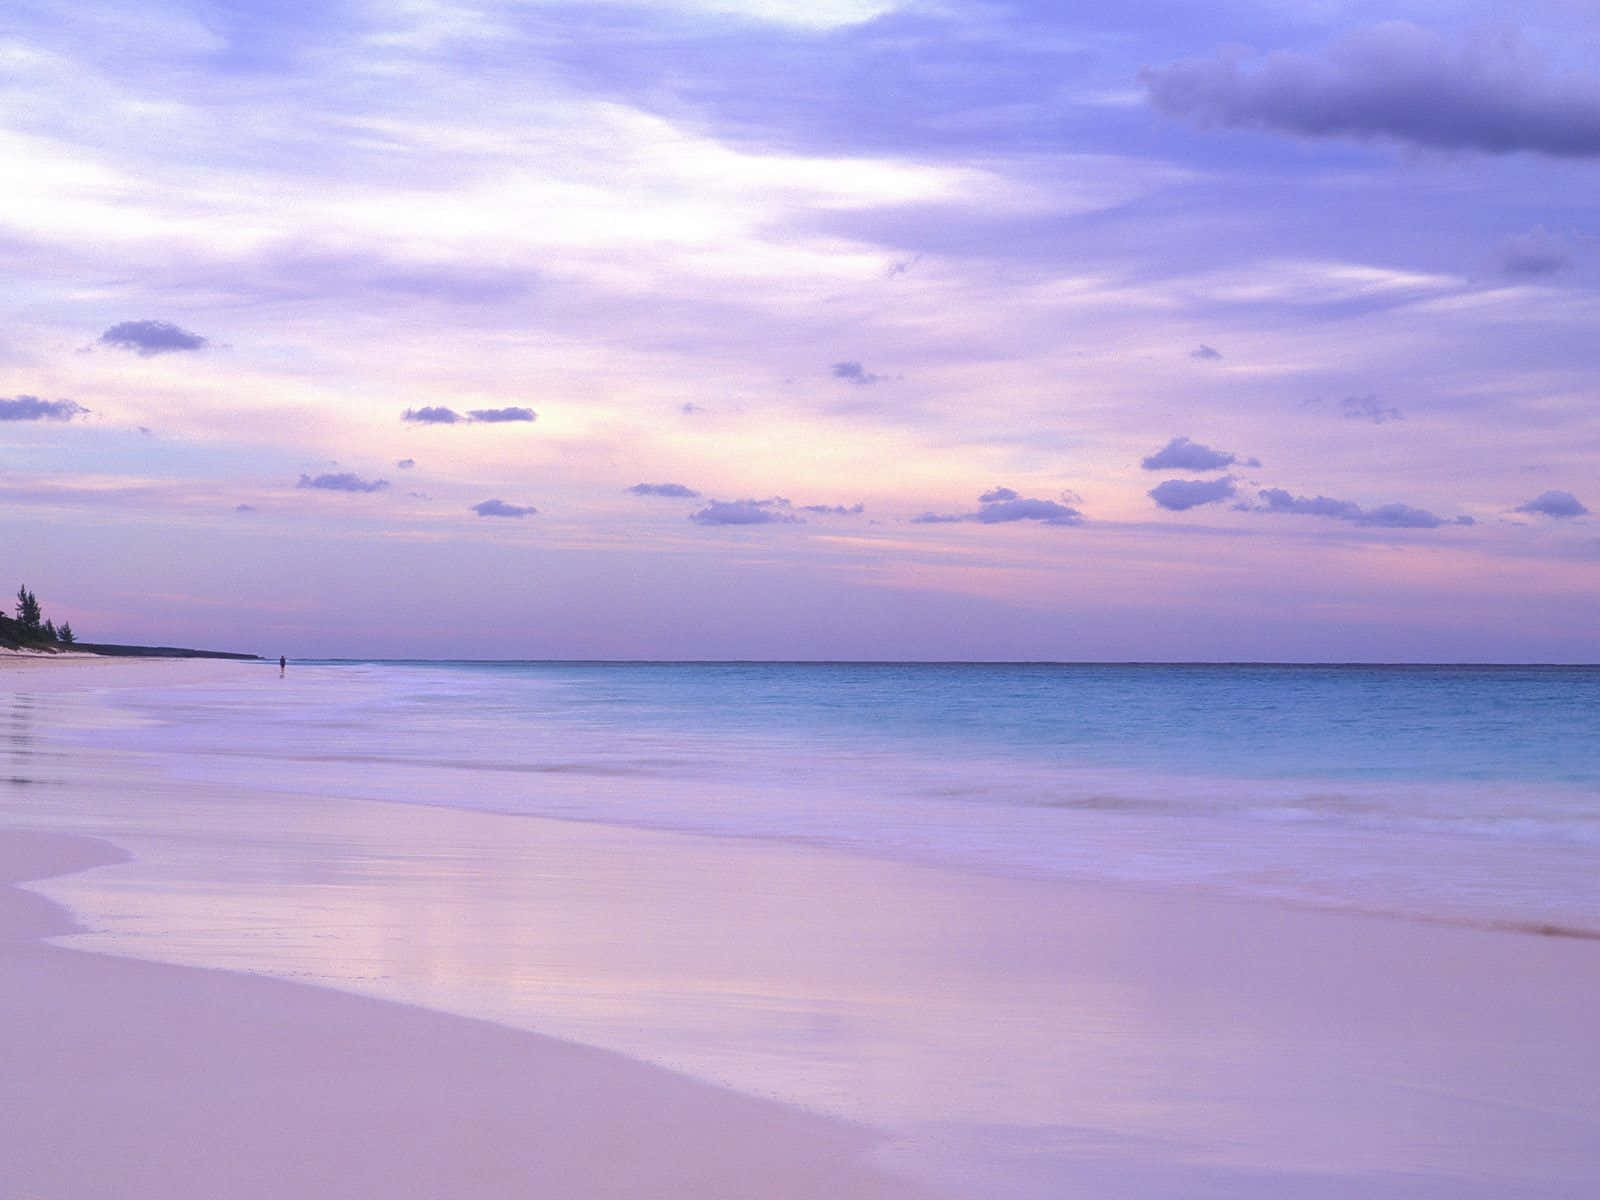 Impresionantesarenas Blancas De La Playa De Bahamas Fondo de pantalla